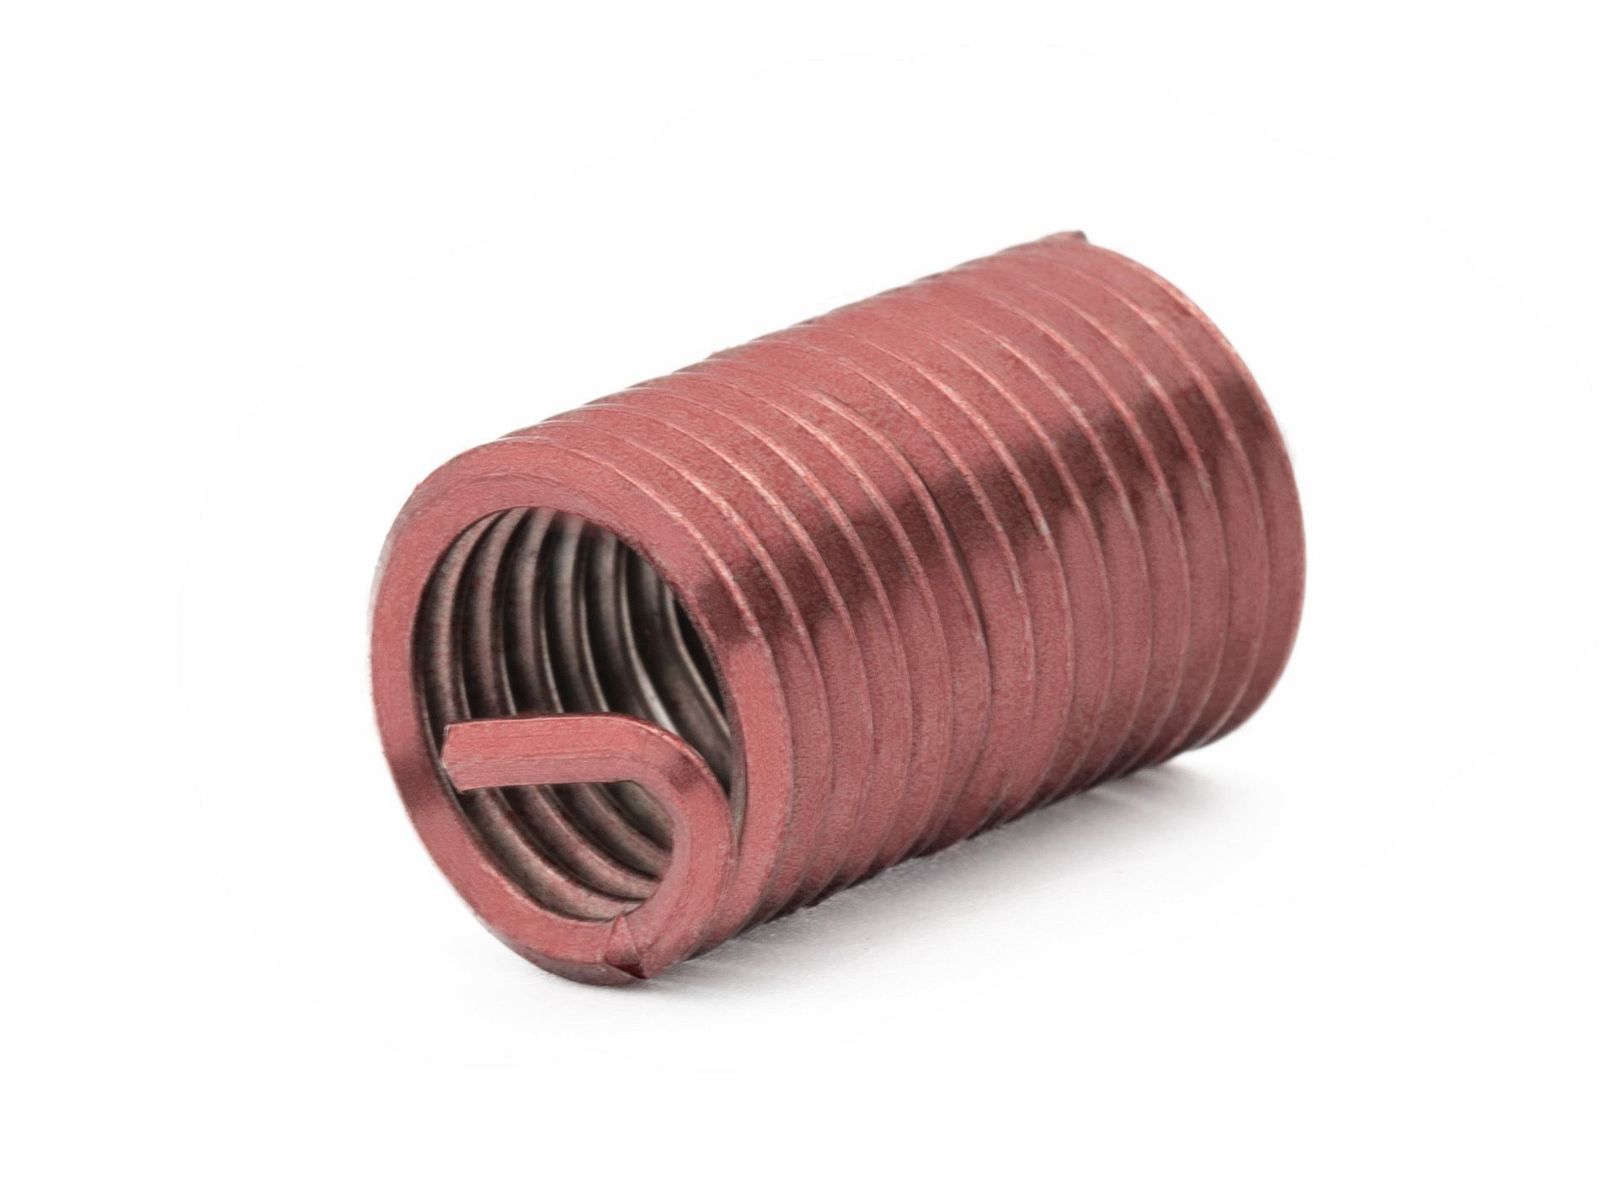 BaerCoil Wire Thread Inserts BSW 1/4 x 20 - 2.5 D (15.88 mm) - screw grip (screw locking) - 100 pcs.